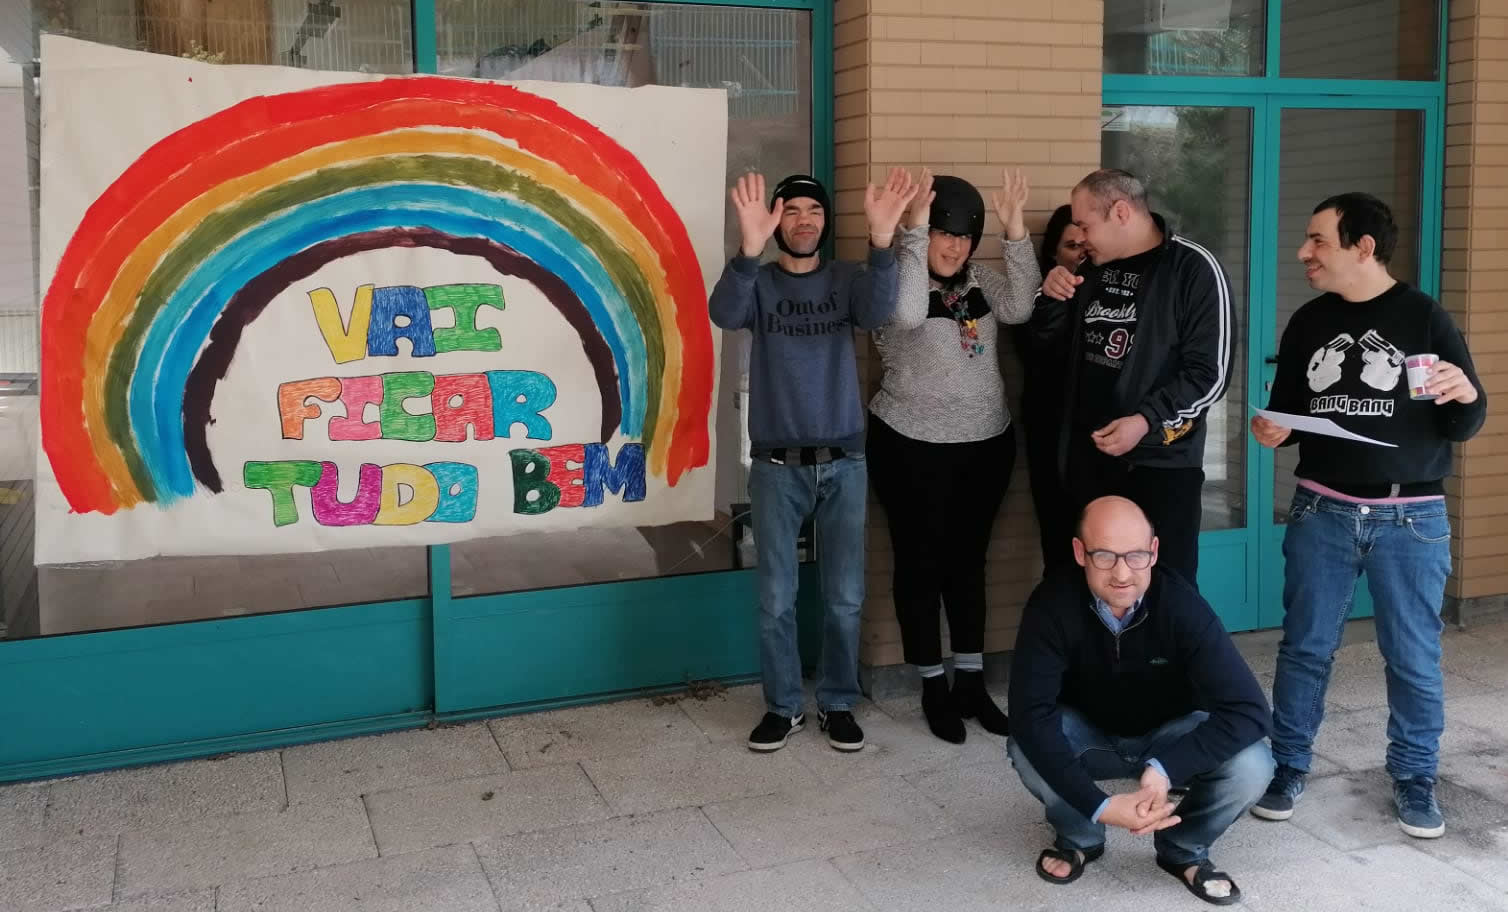 Seis clientes do lar residencial da Cercigui com a faixa "Vai ficar tudo bem" e o arco-íris pintado